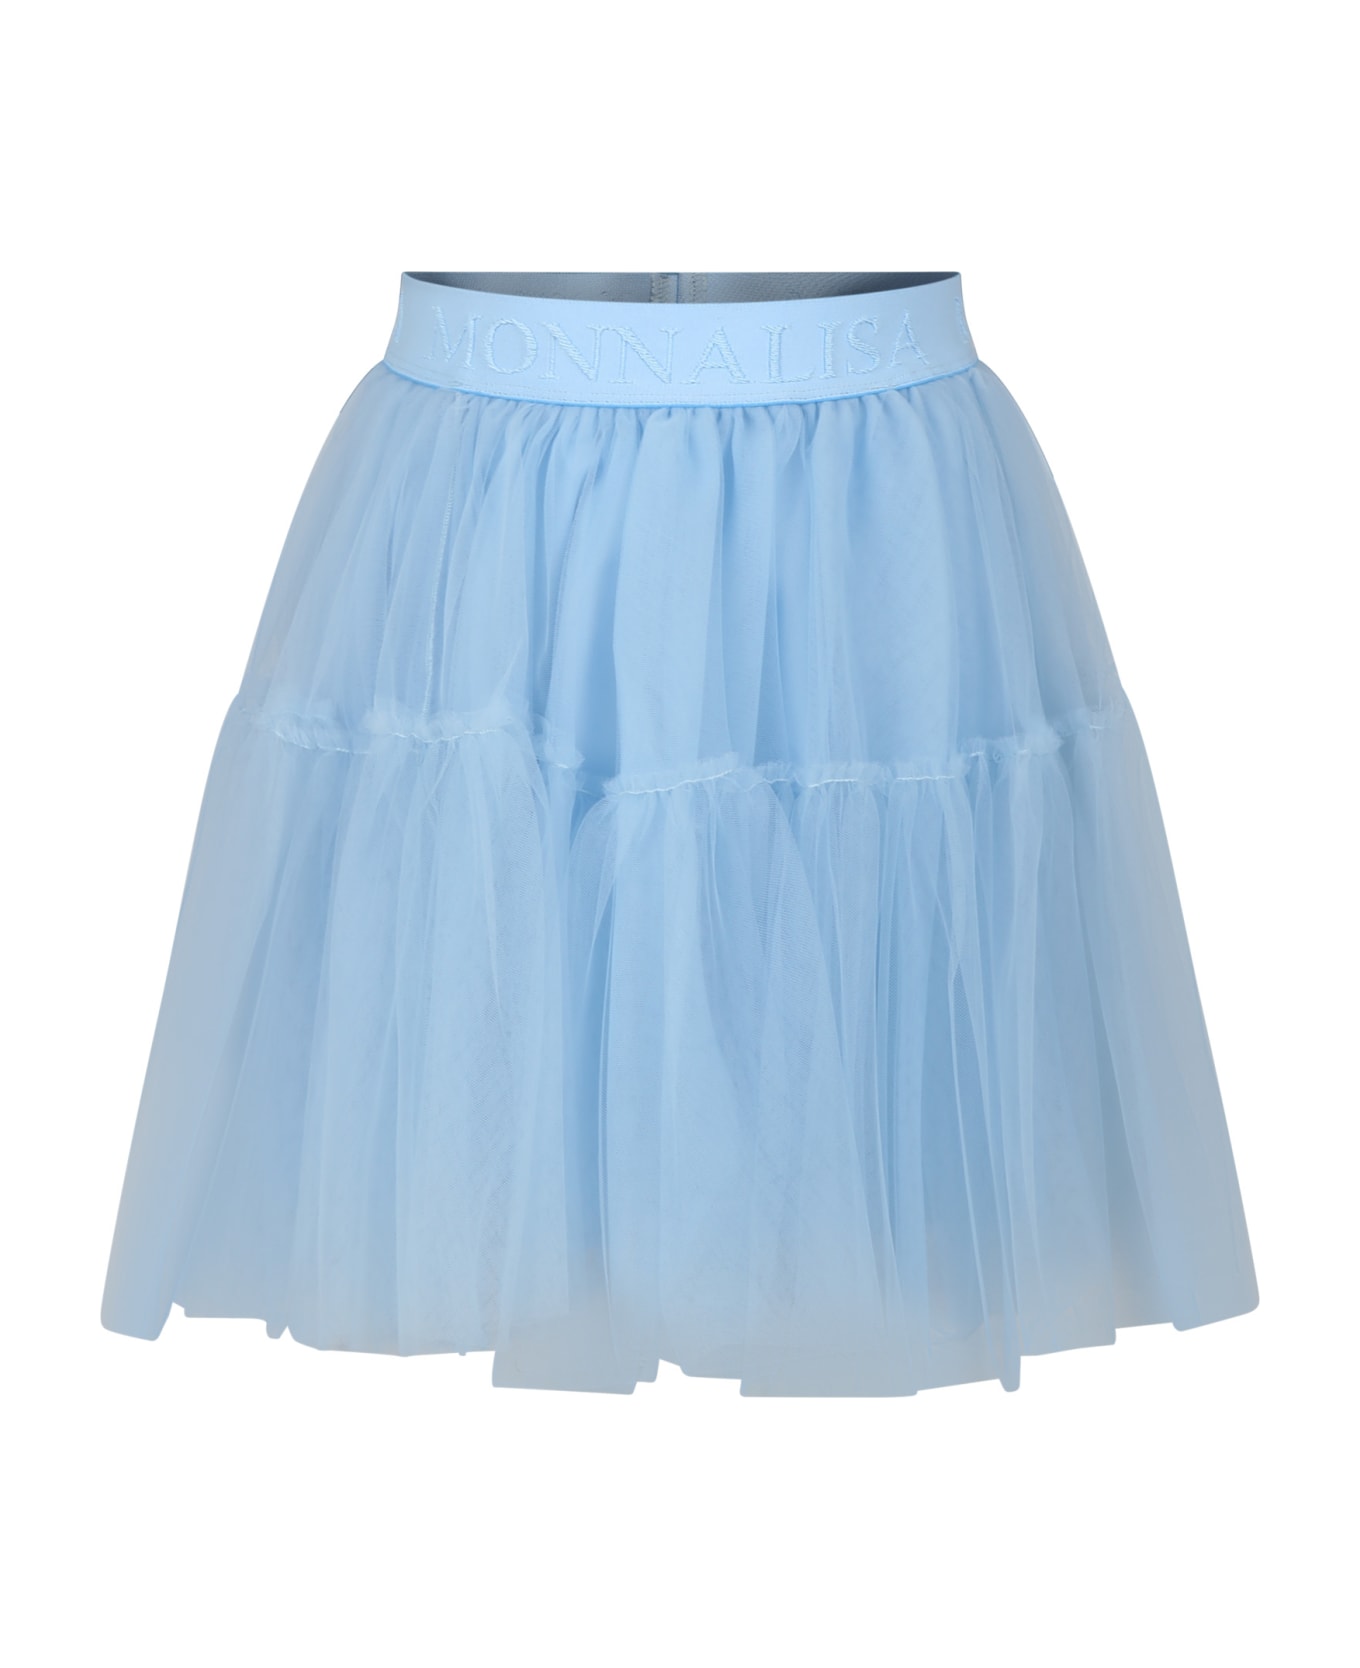 Monnalisa Light Blue Elegant Tulle Skirt For Girl - Light Blue